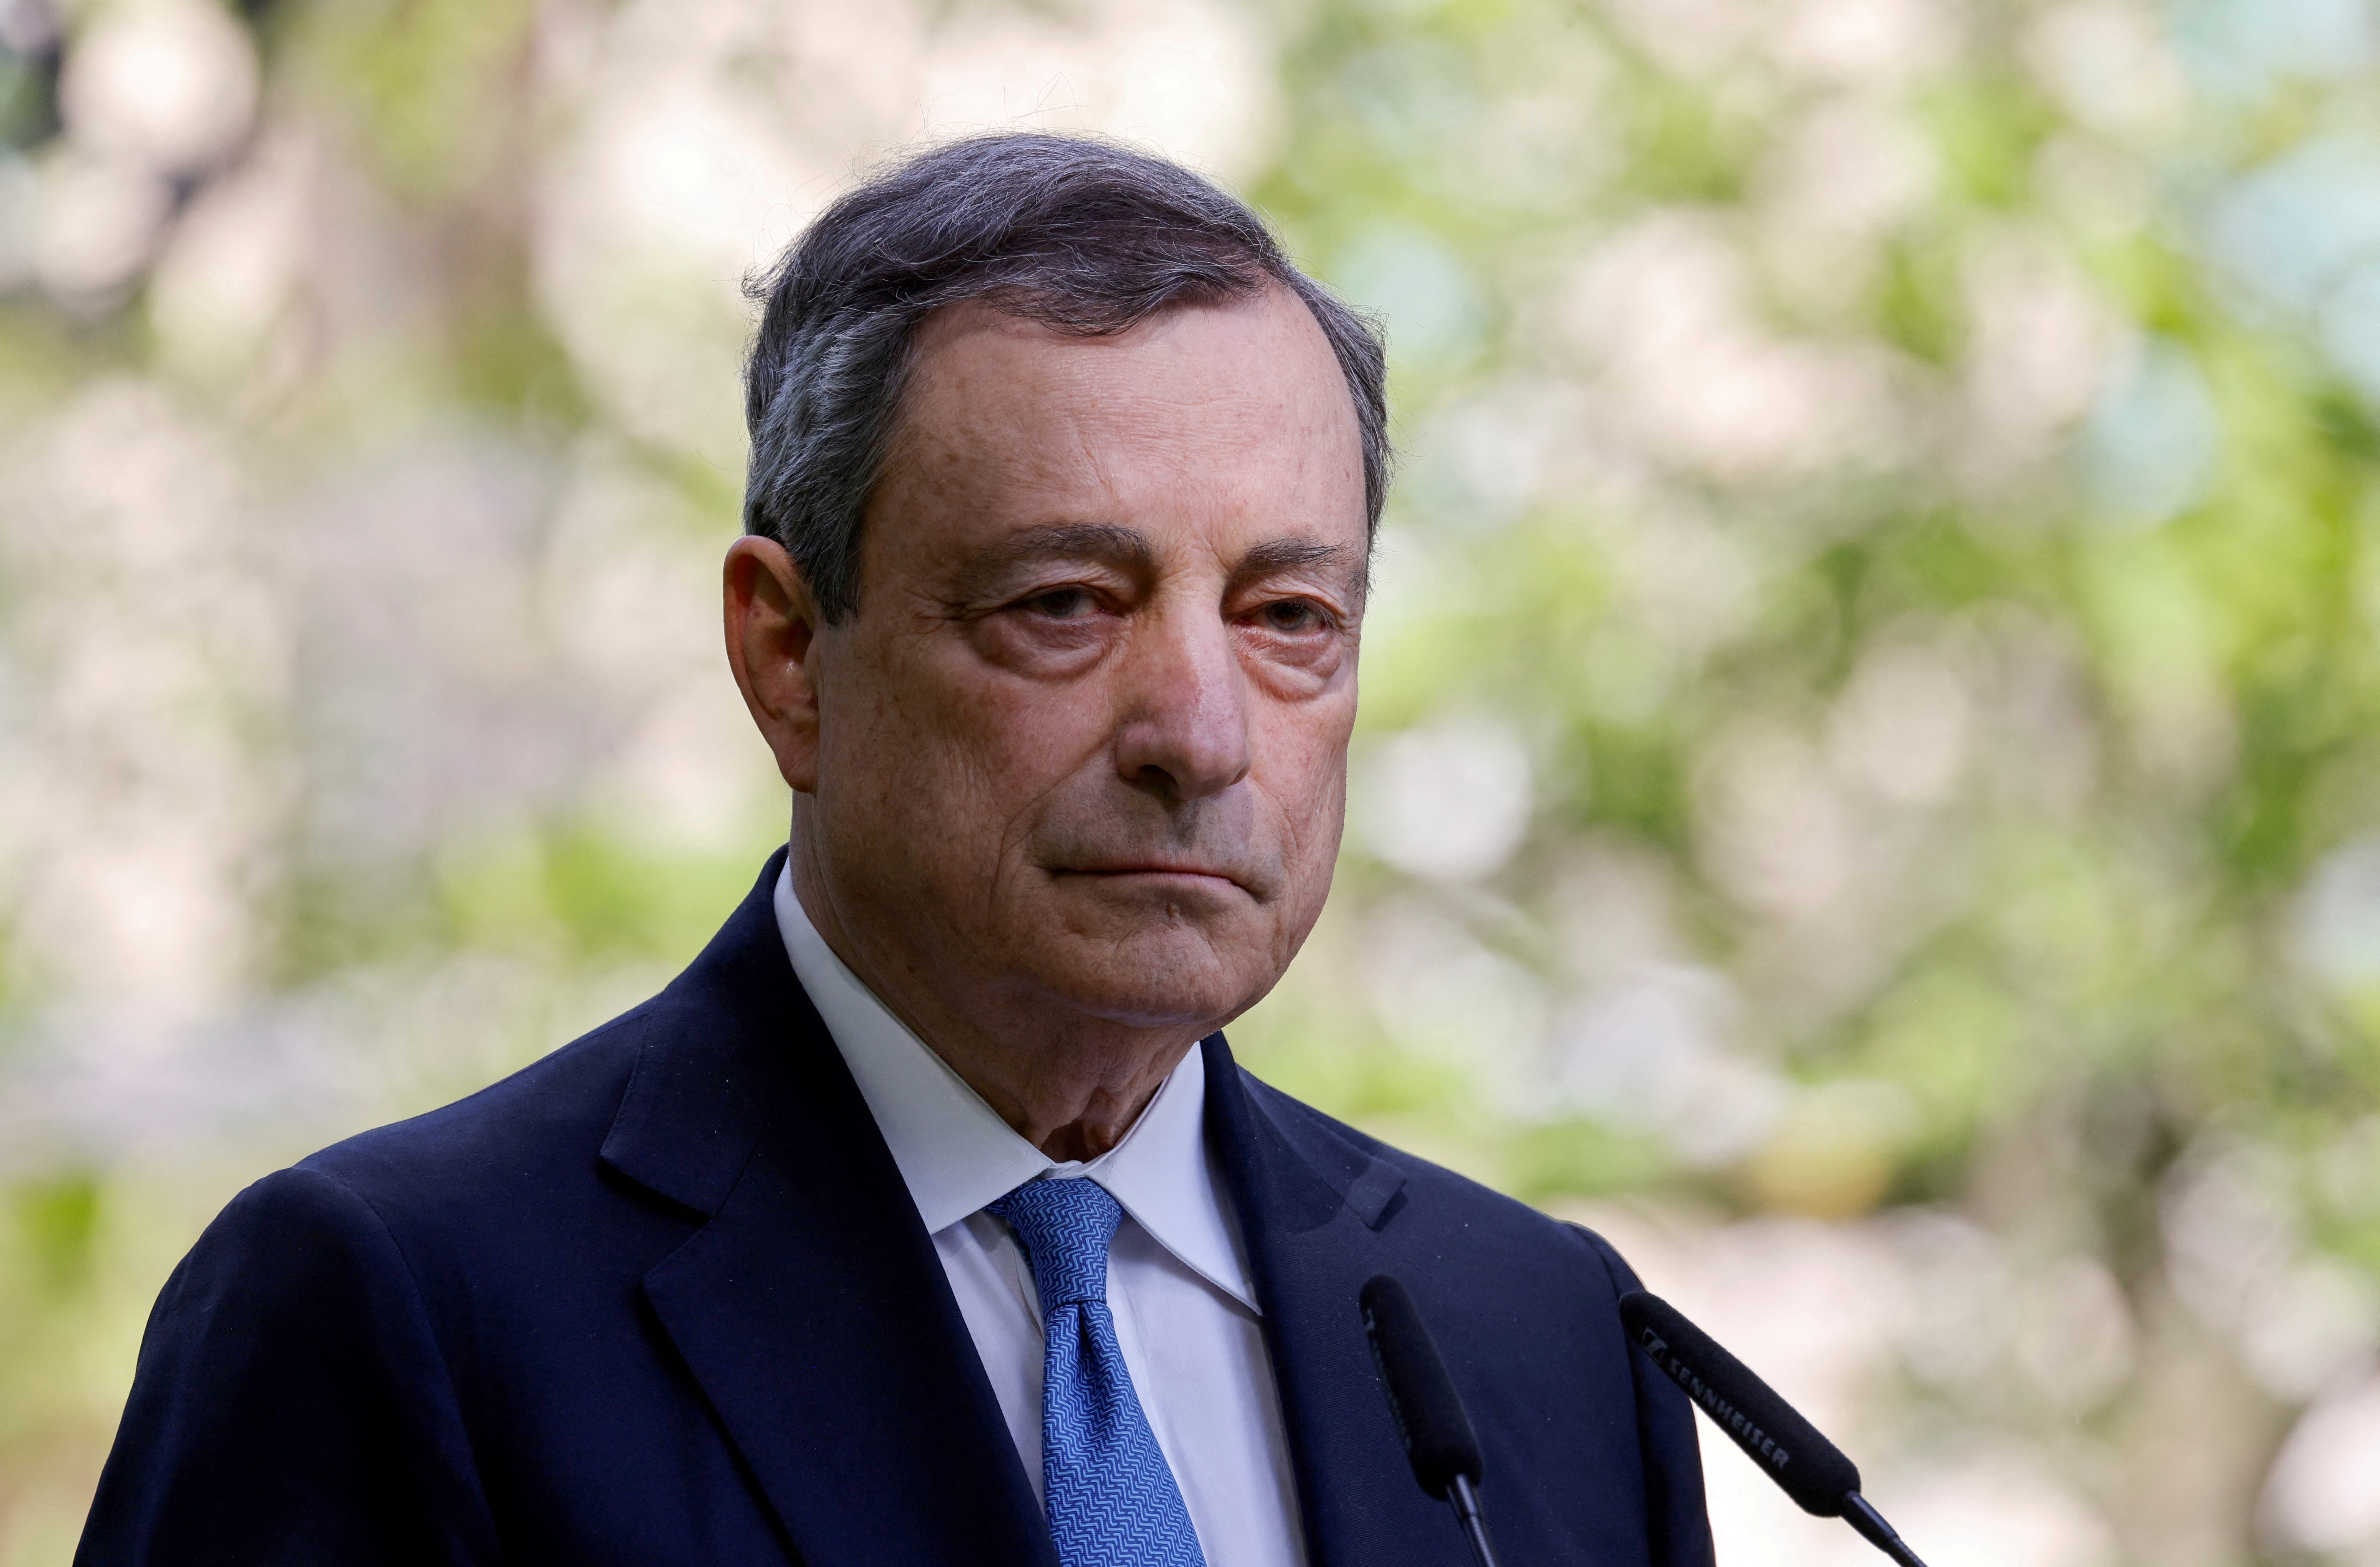 Crise politique en Italie: Mario Draghi sous pression pour rester à la tête du gouvernement